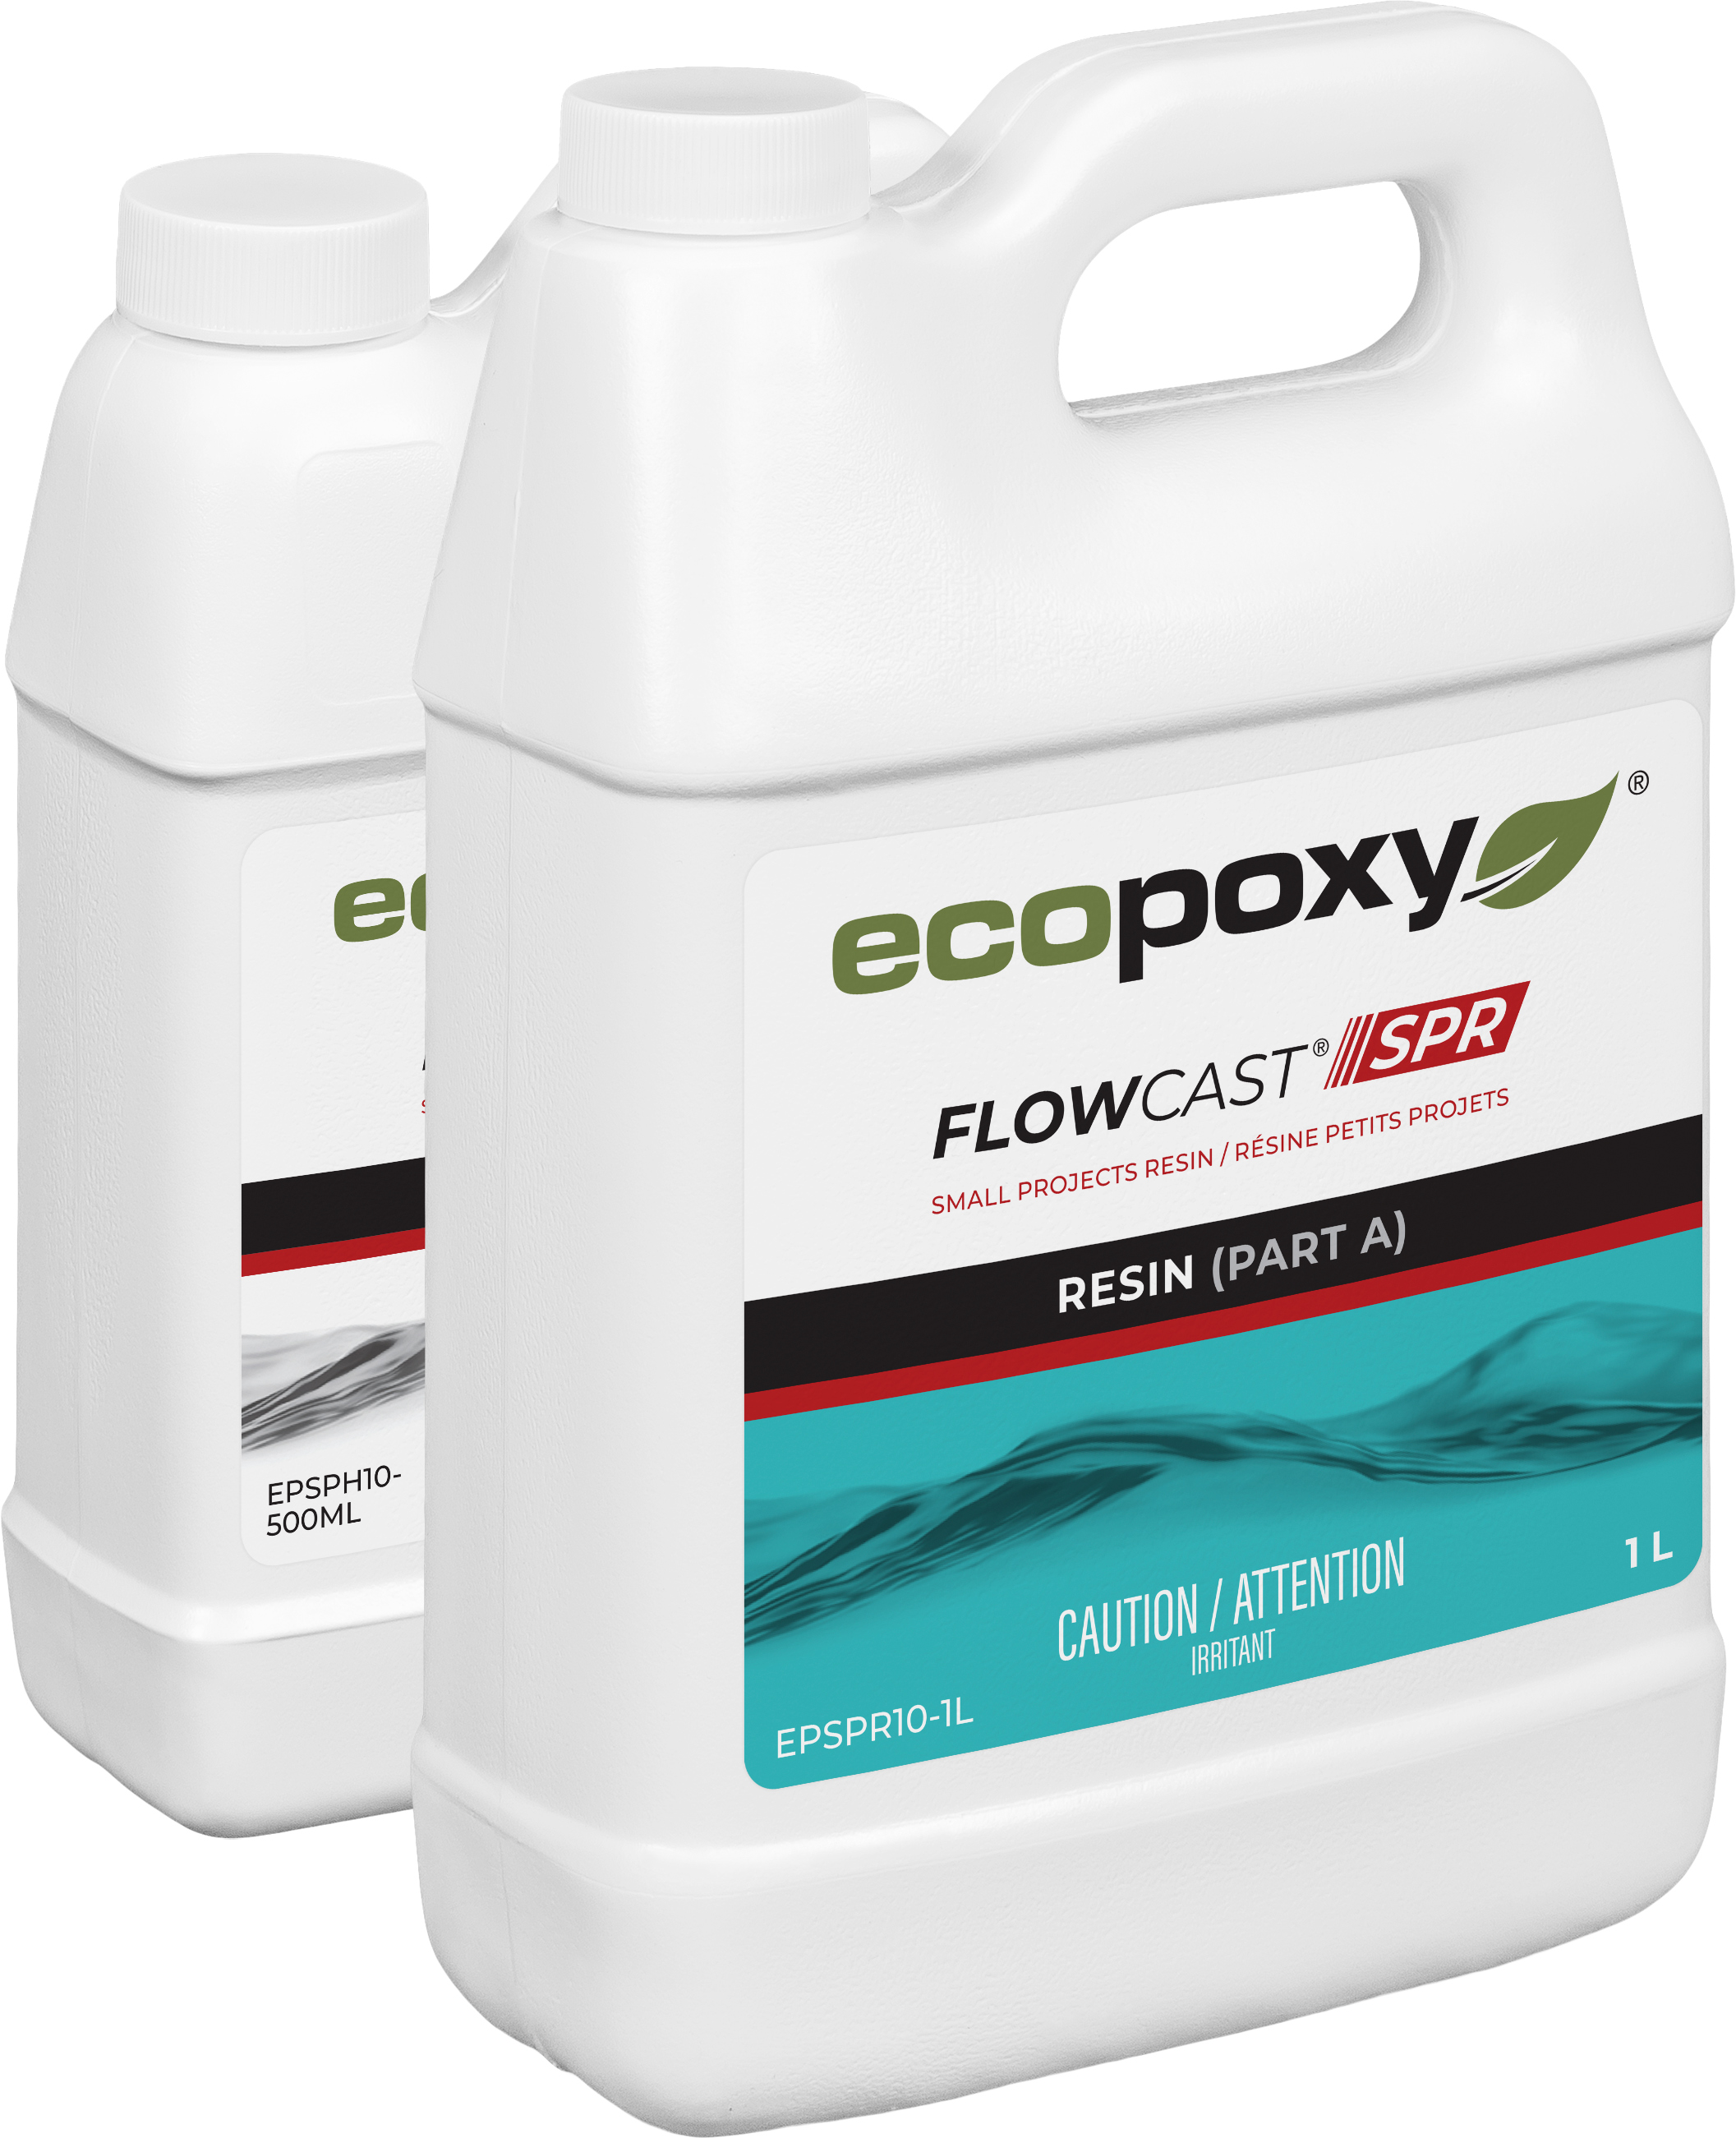 Flowcast SPR - Résine époxy pour moulage de petits projets - EcoPoxy -  Ardec - Produits pour bois